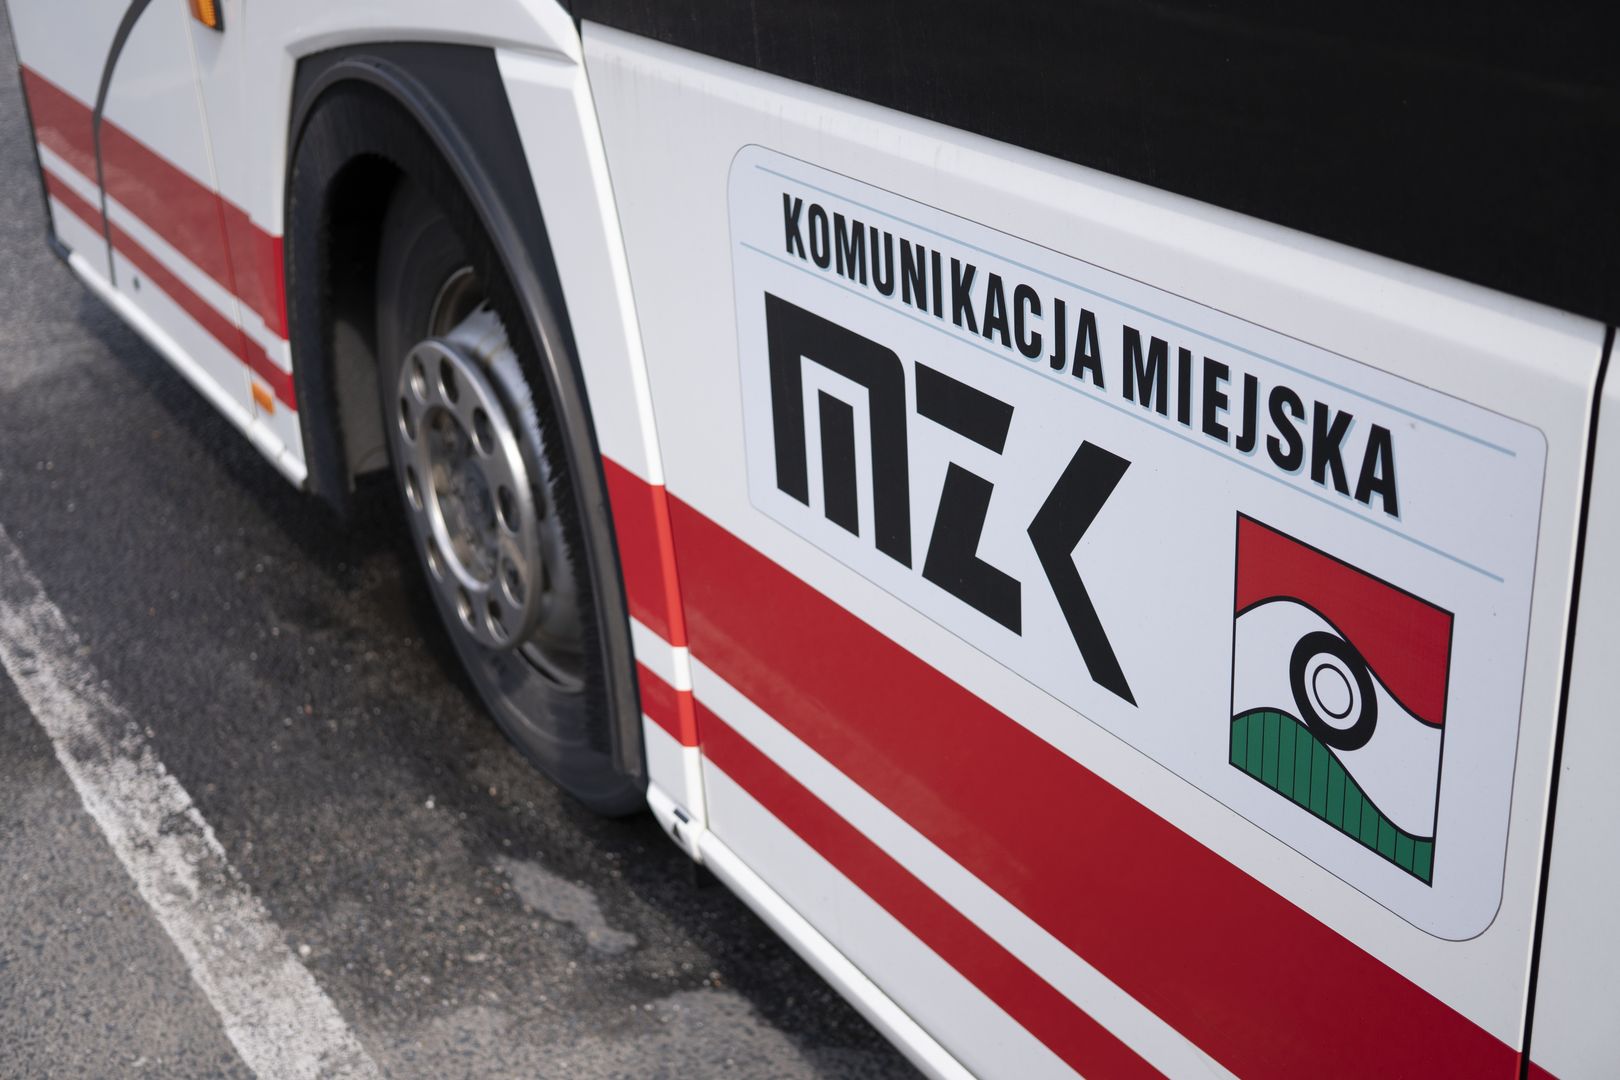 Mobilny Punkt Informacji MZK w Czerwionce-Leszczynach